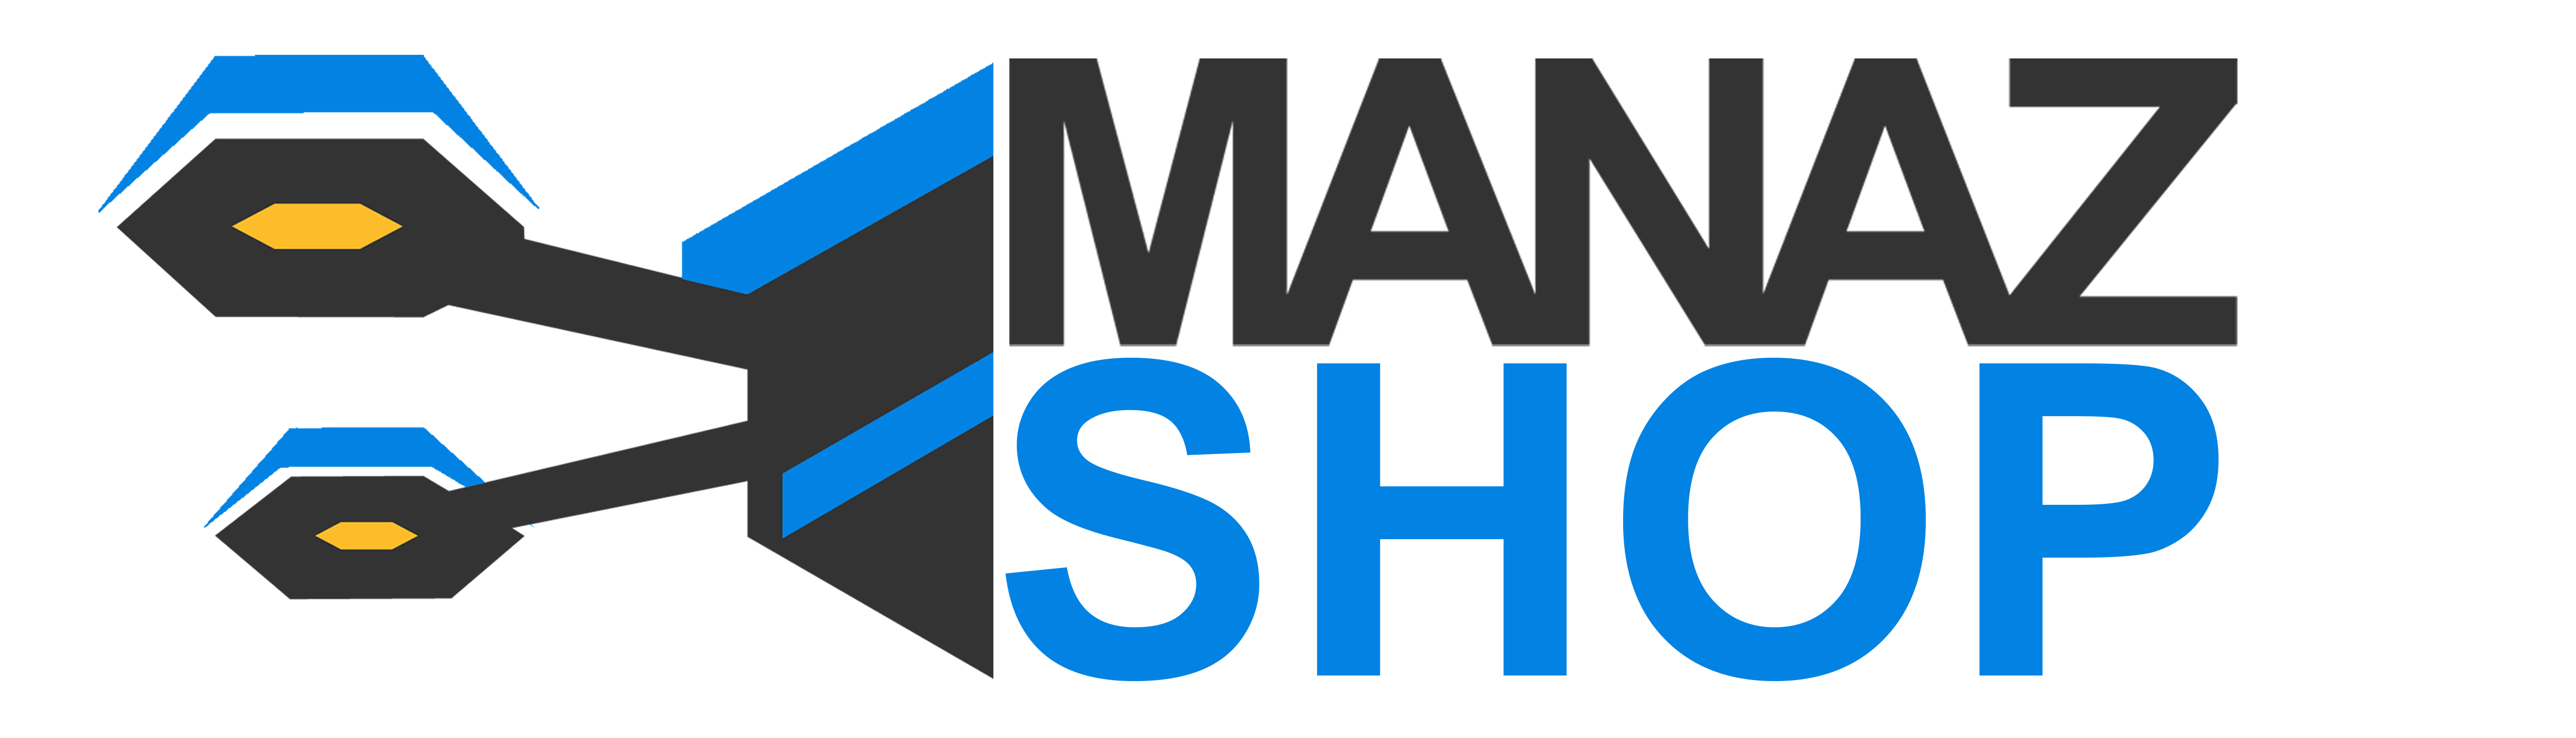 ManazGCS Shop